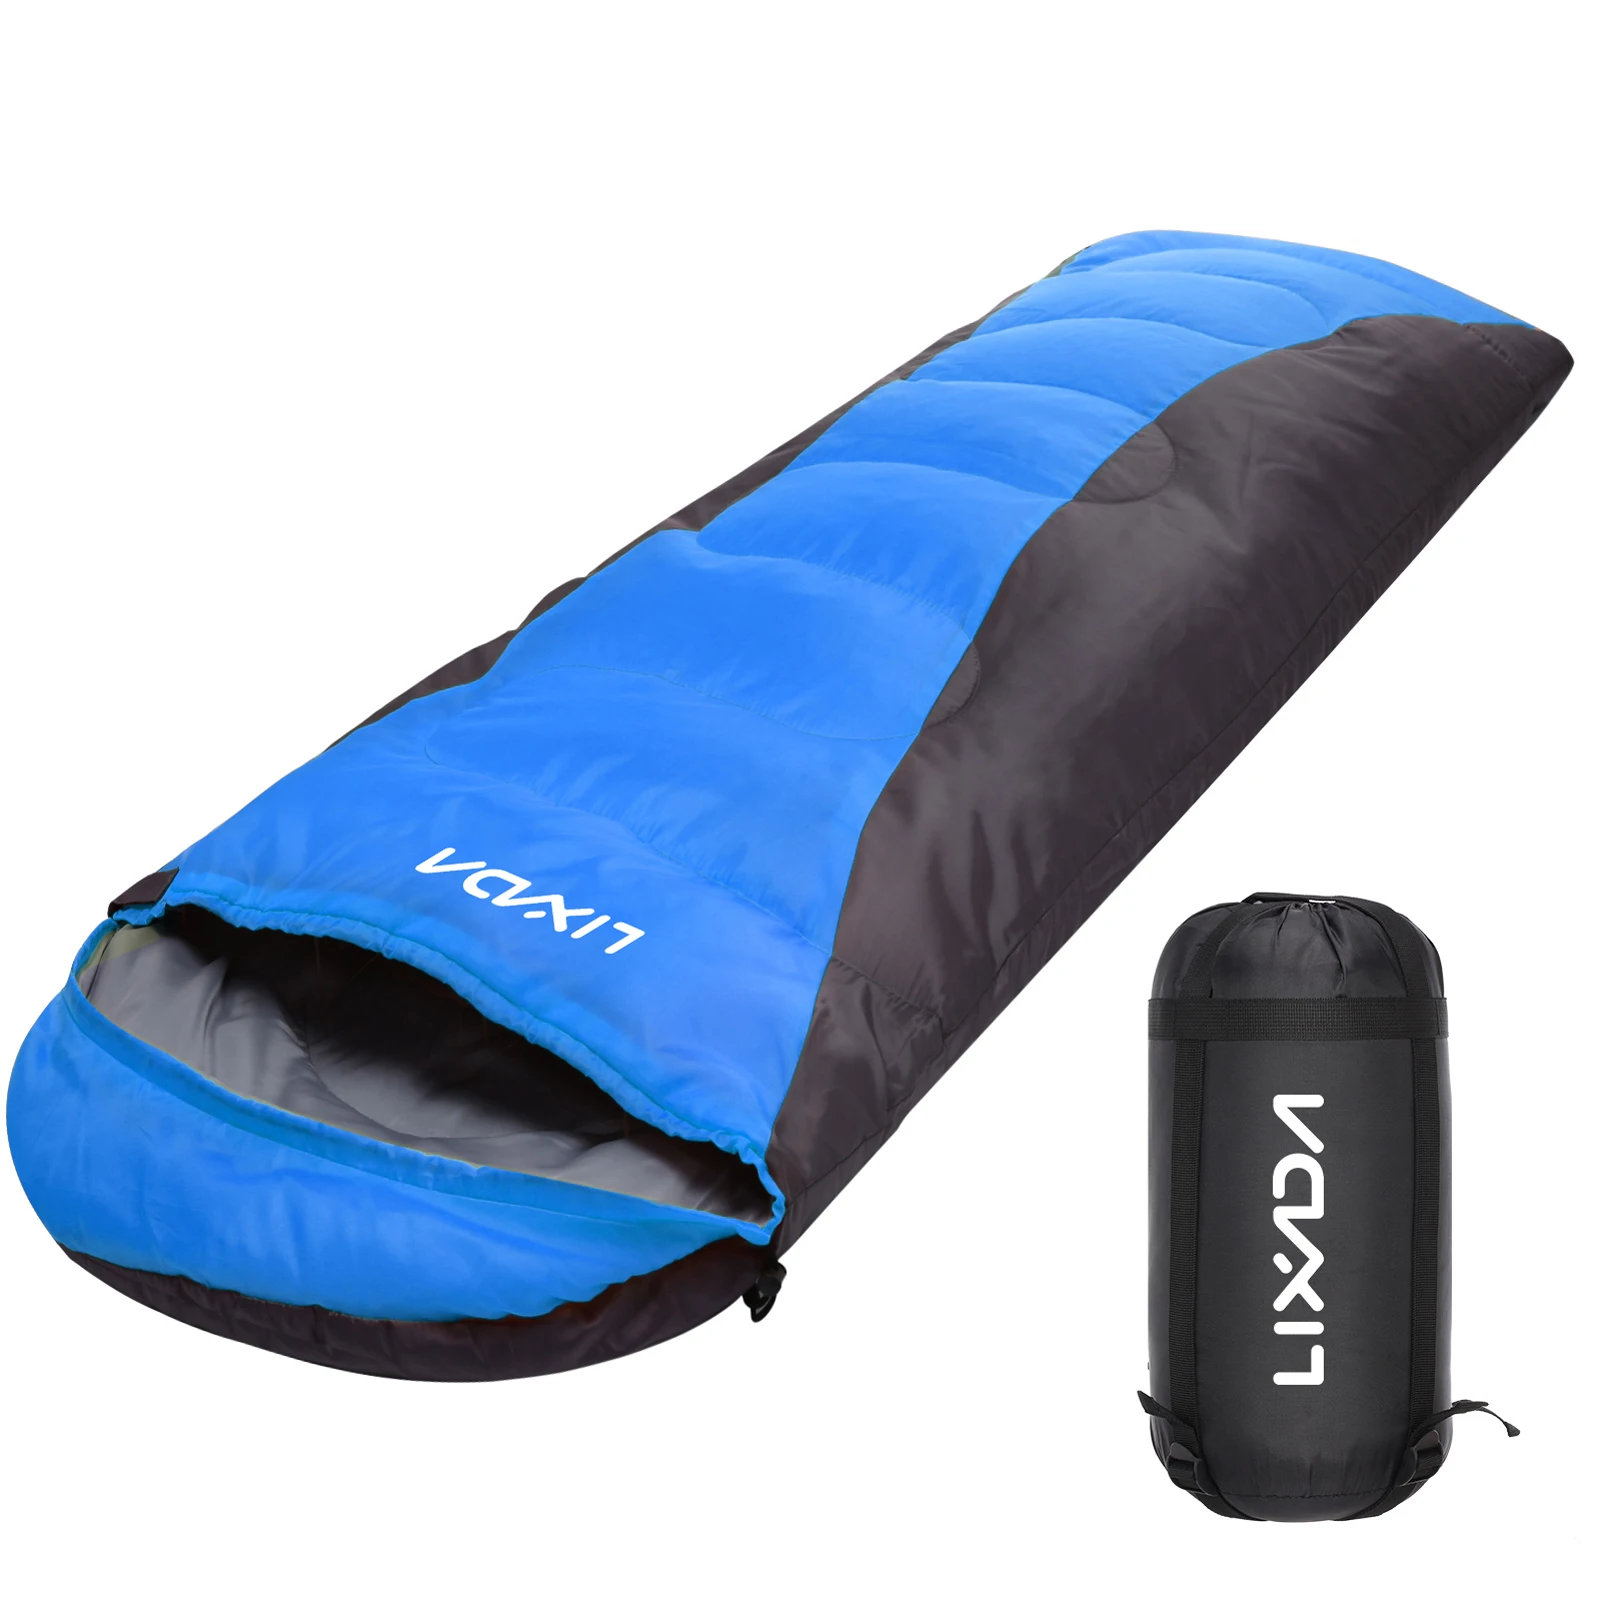 

Lixada всесезонный теплый спальный мешок для кемпинга, водонепроницаемый с сумкой для хранения, для всех сезонов, для походов, путешествий, для активного отдыха